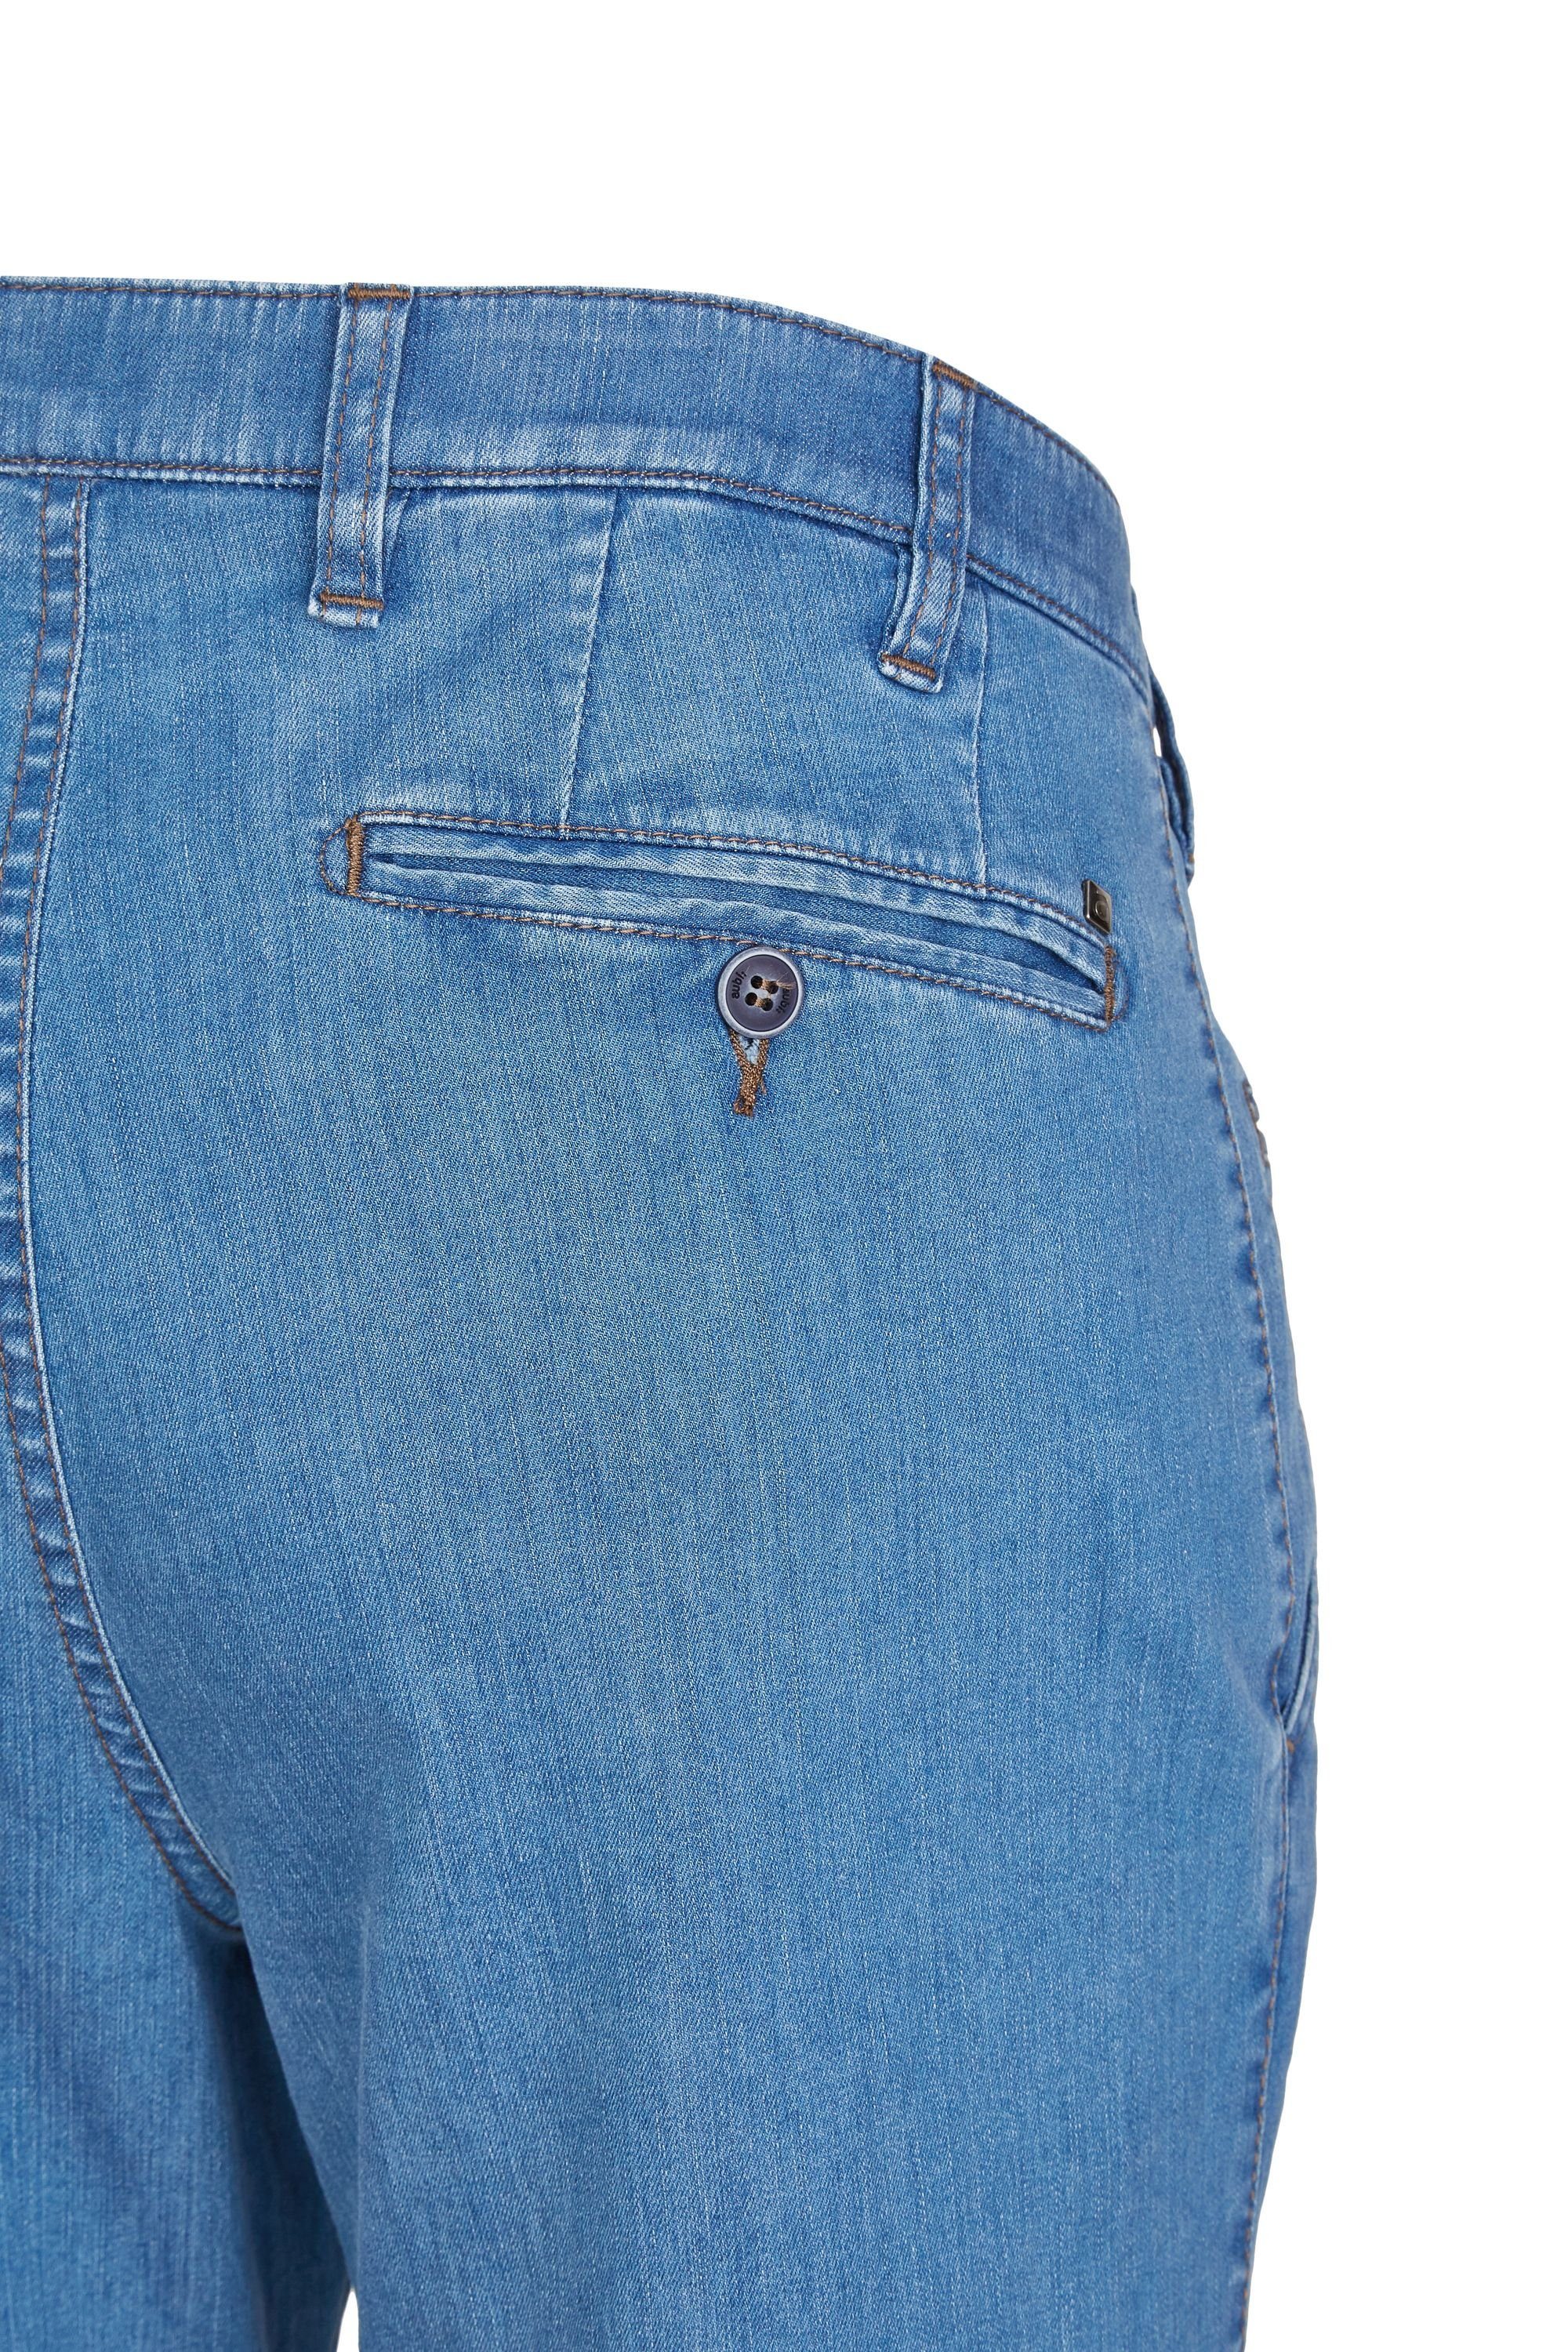 aubi: Bequeme Herren Jeans Jeans Sommer bleached Modell Hose Stretch High aus Baumwolle Fit Flex 526 Perfect aubi (43)